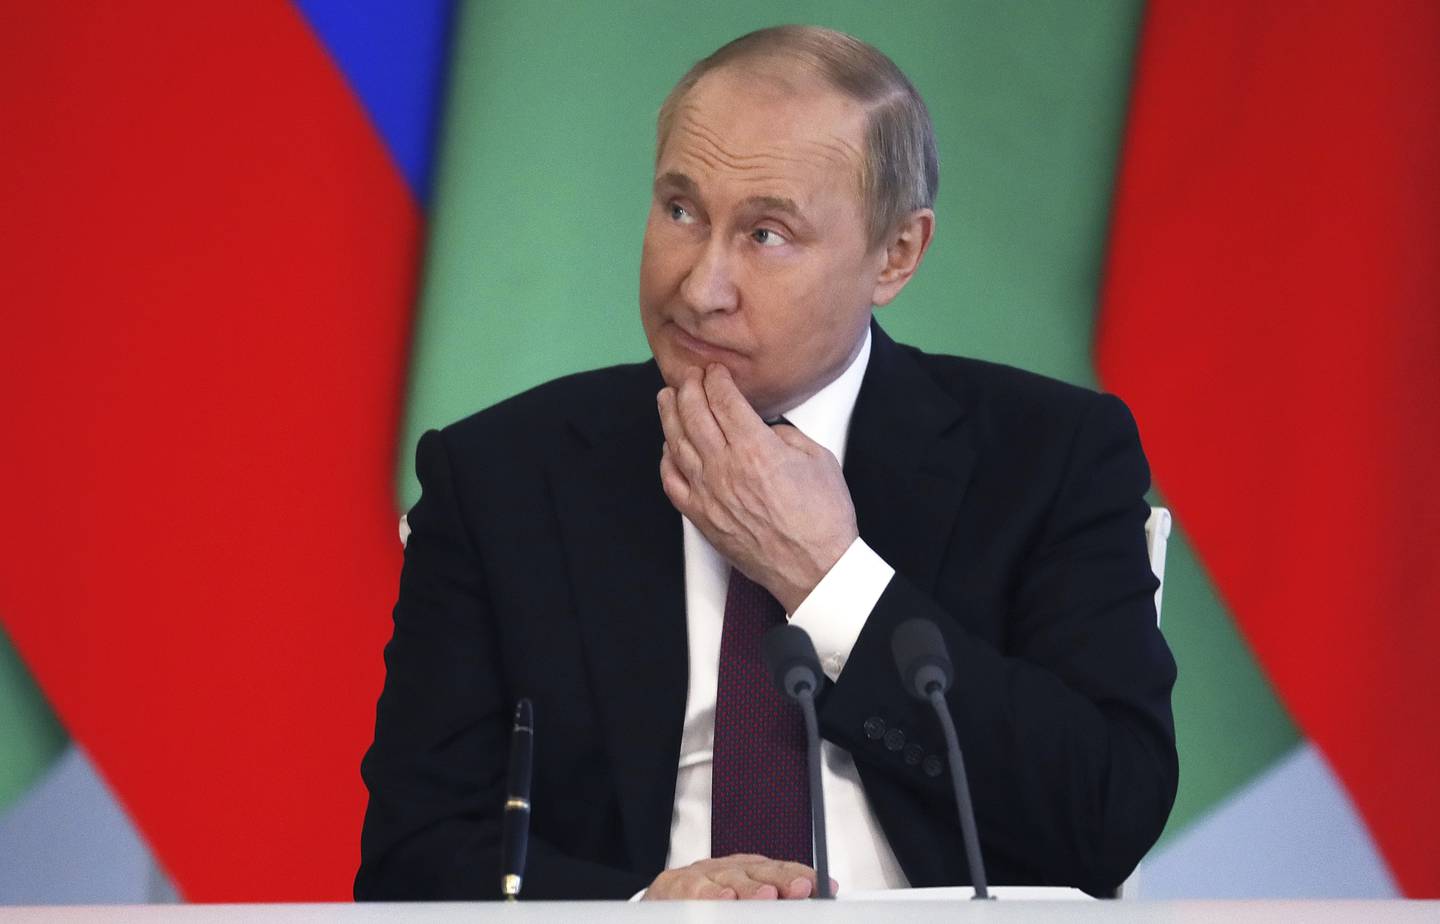 Russlands president Vladimir Putin er involvert i krigen i Ukraina på lang sikt, mener norsk professor. Foto: Jurij Kotsjetkov / AP / NTB